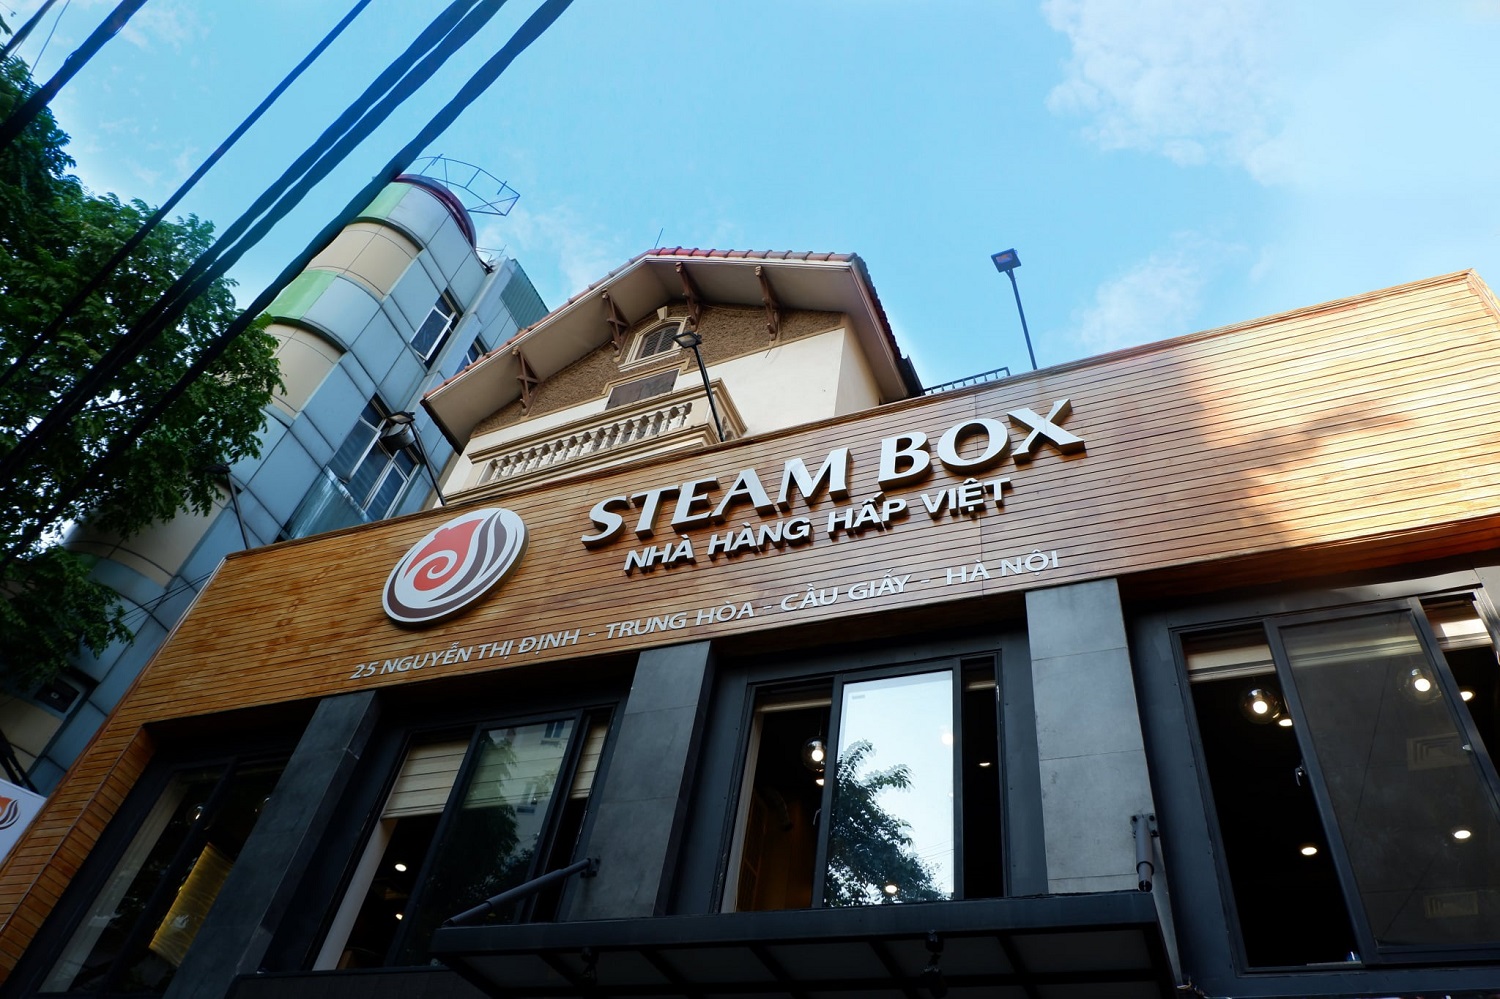 Nhà hàng Steam Box - Trải nghiệm ẩm thực với các món hấp đảm bảo dưỡng chất 2